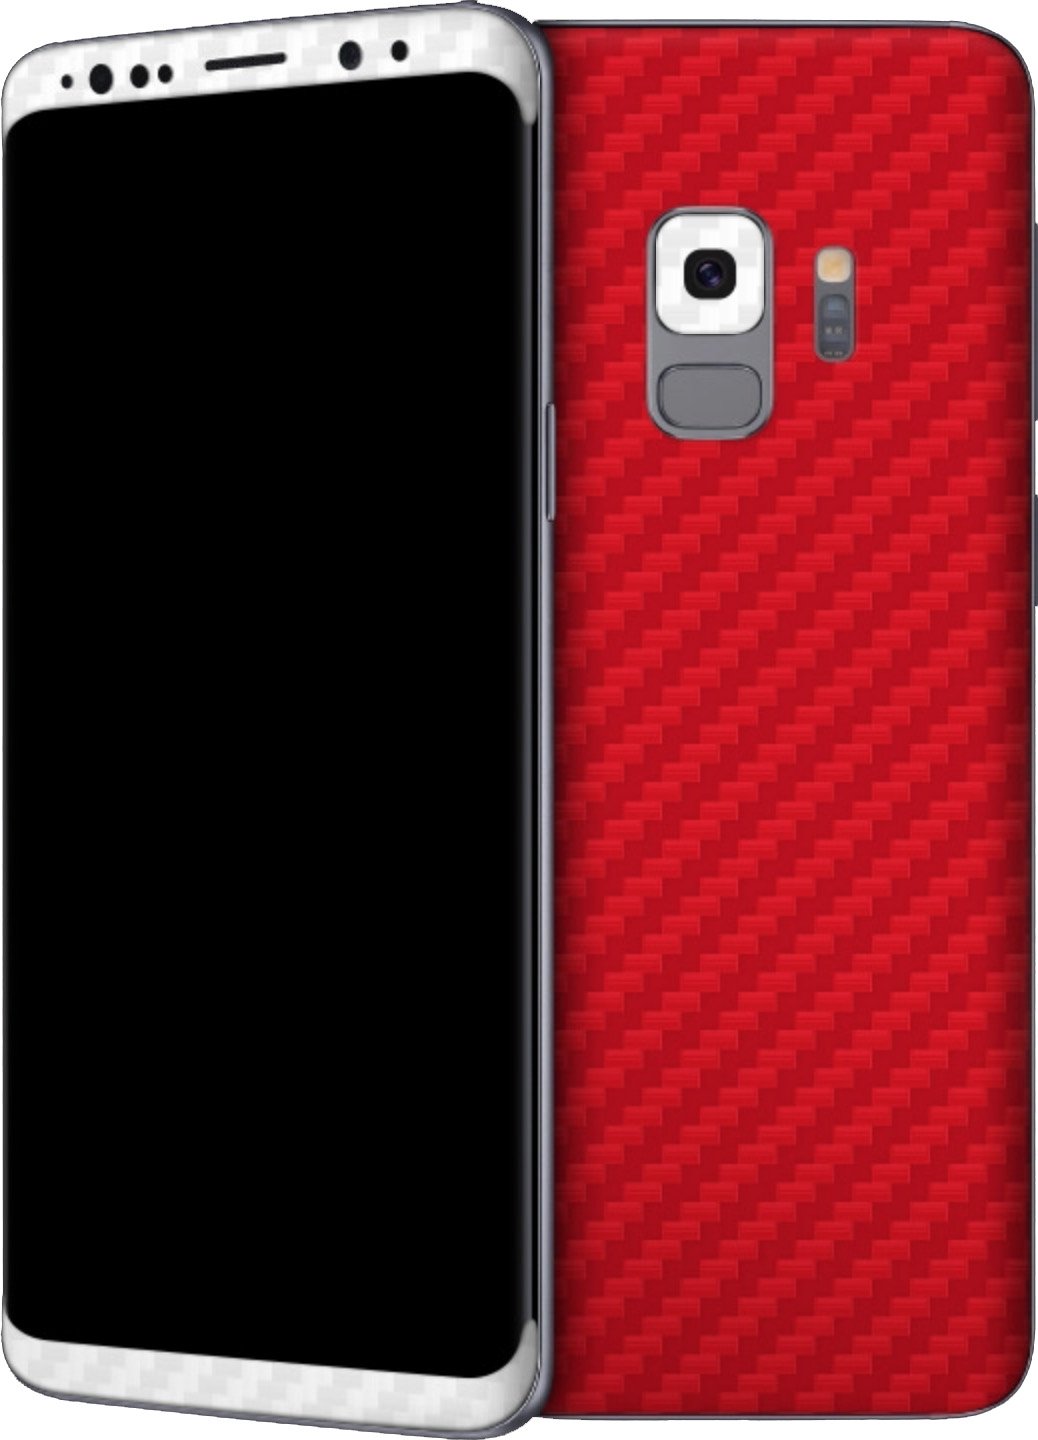 안드로이드 중앙 배경 갤러리,휴대폰 케이스,휴대 전화,간단한 기계 장치,빨간,검정